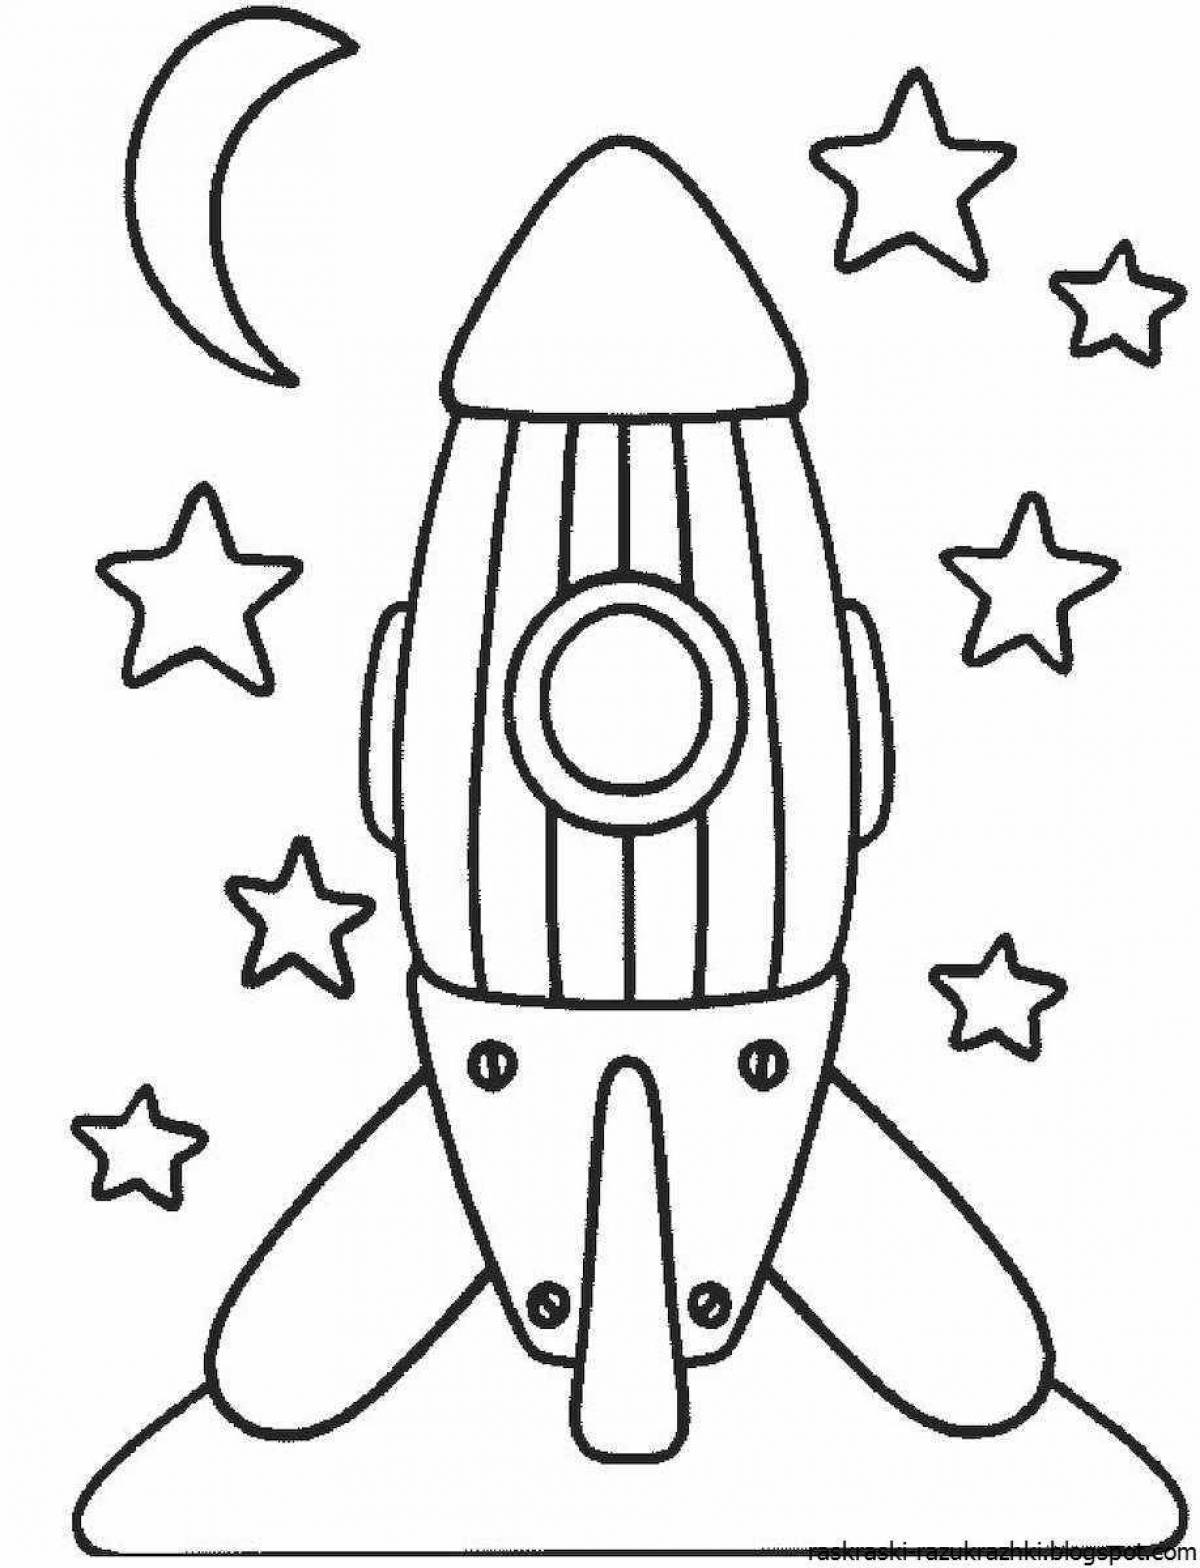 Милая раскраска ракеты для детей 6-7 лет